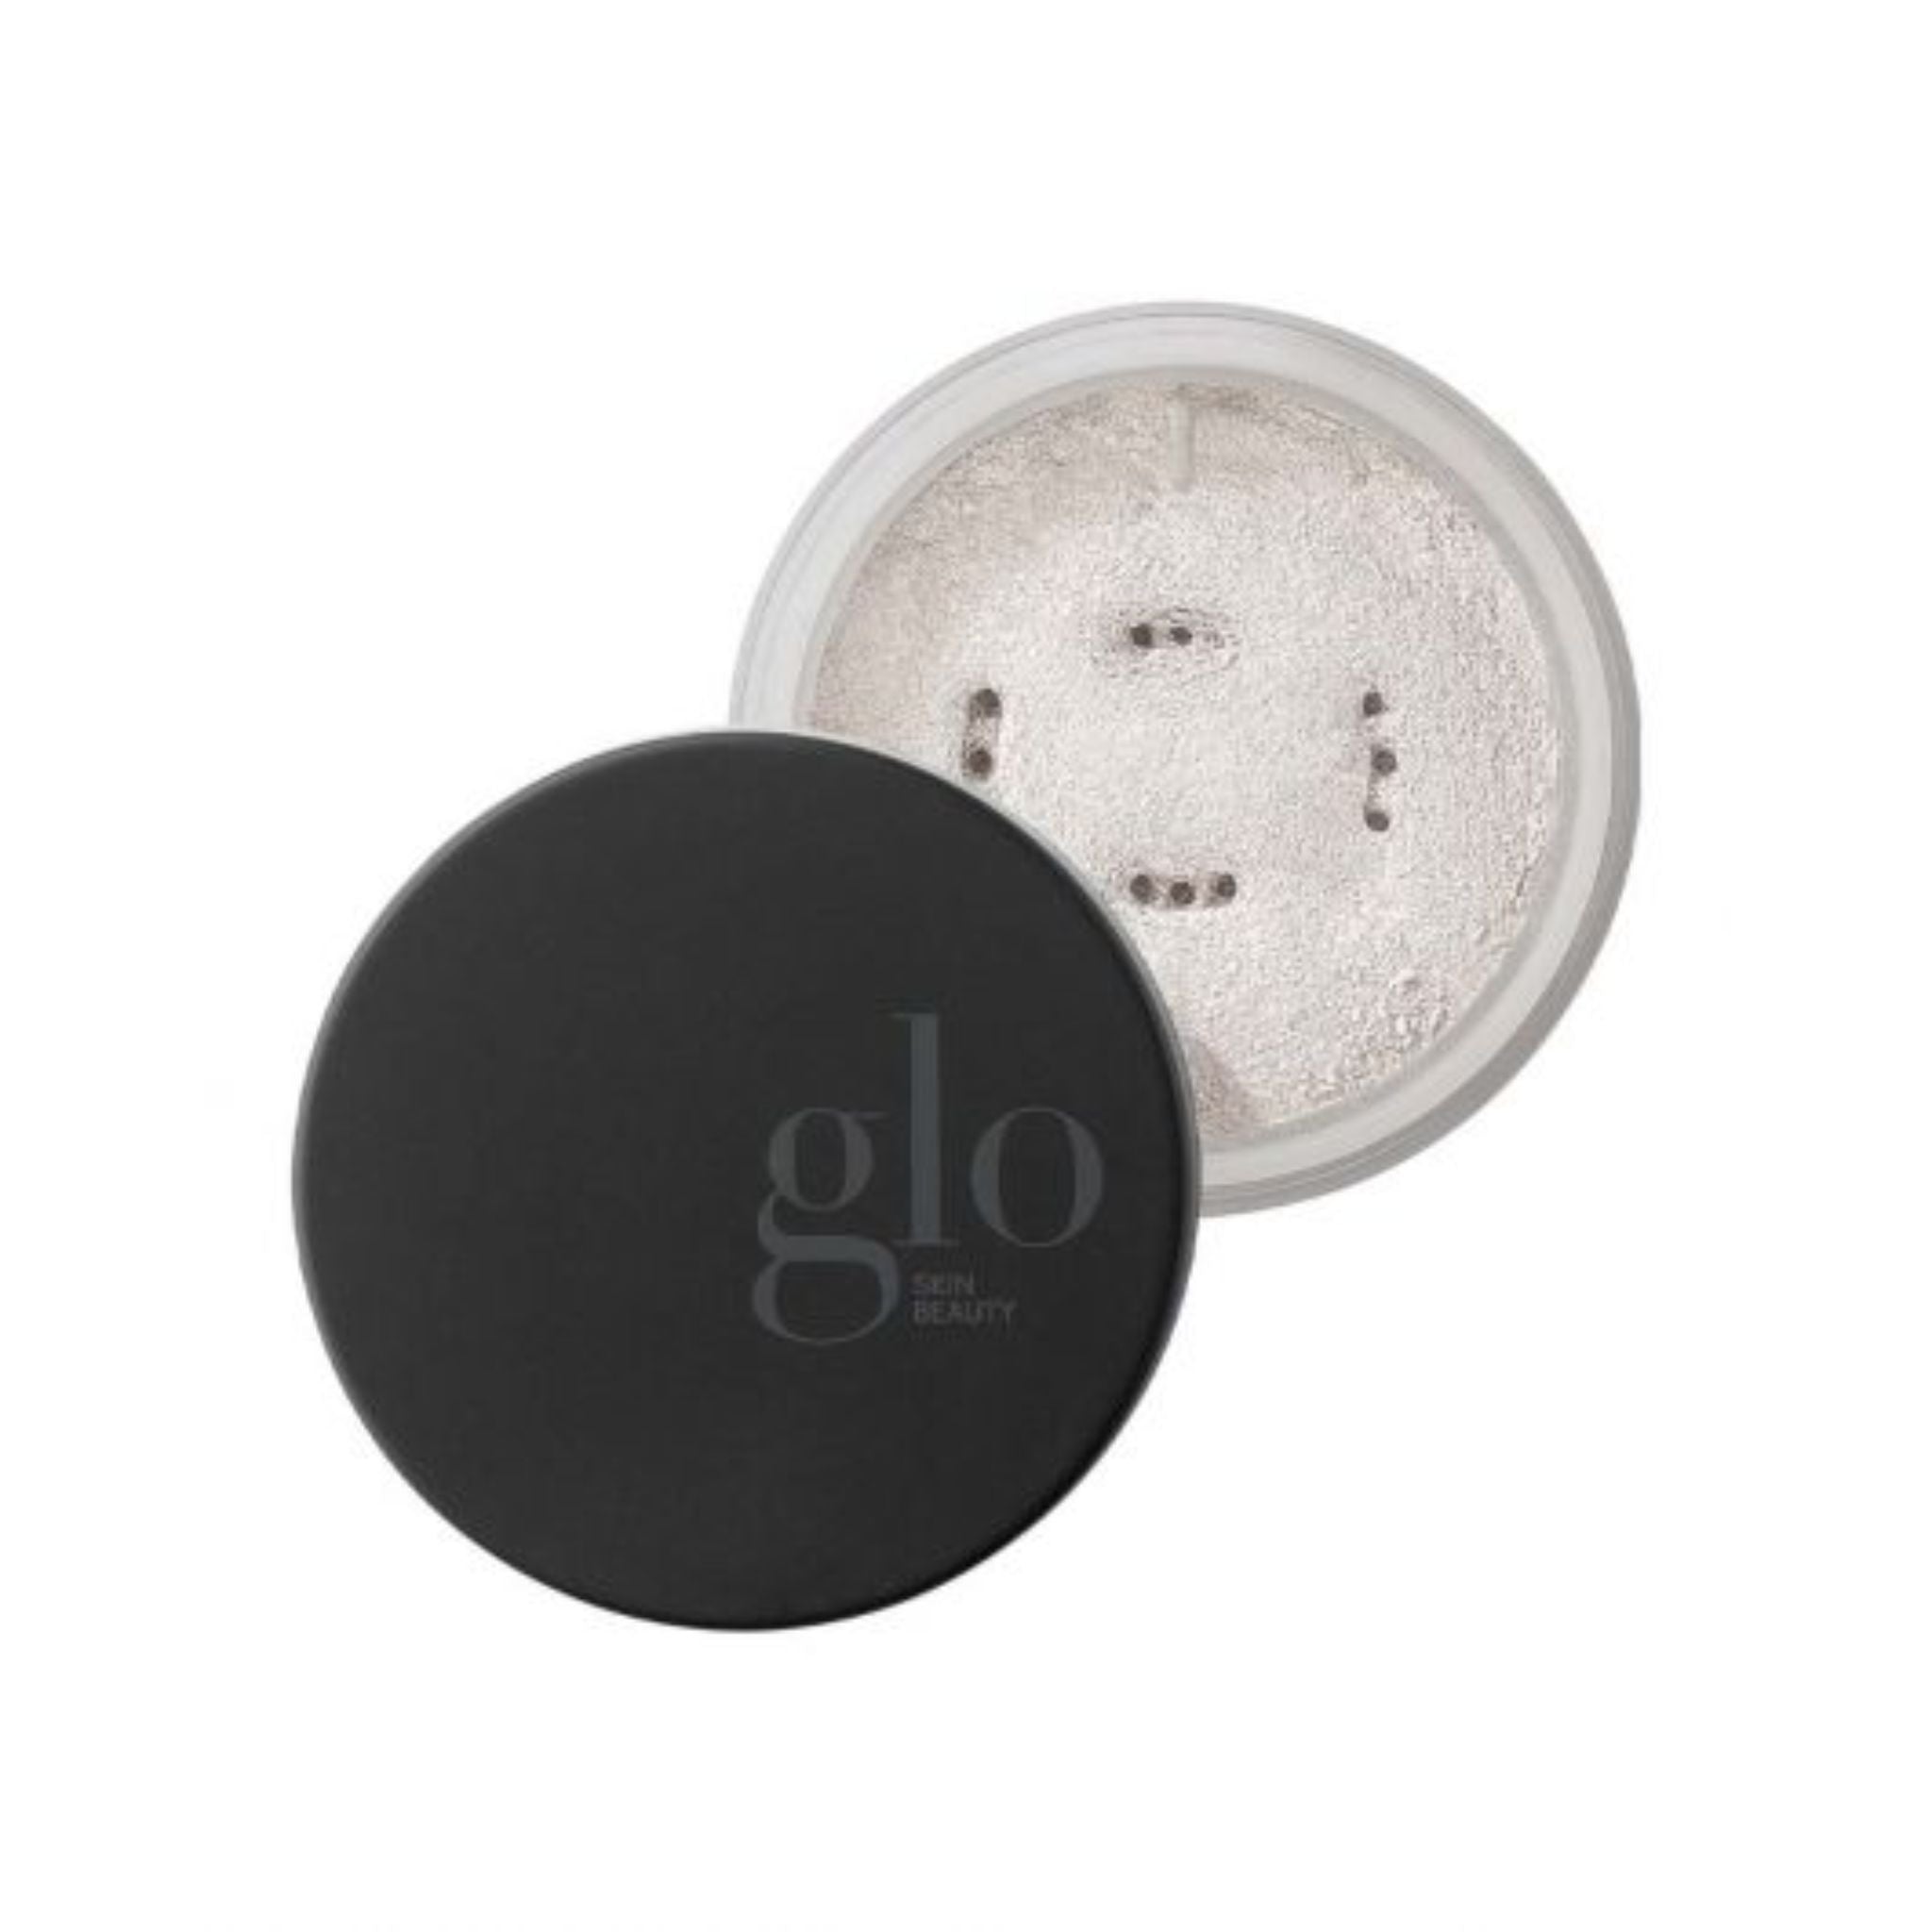 Glo Skin Beauty - Luminous Setting Powder